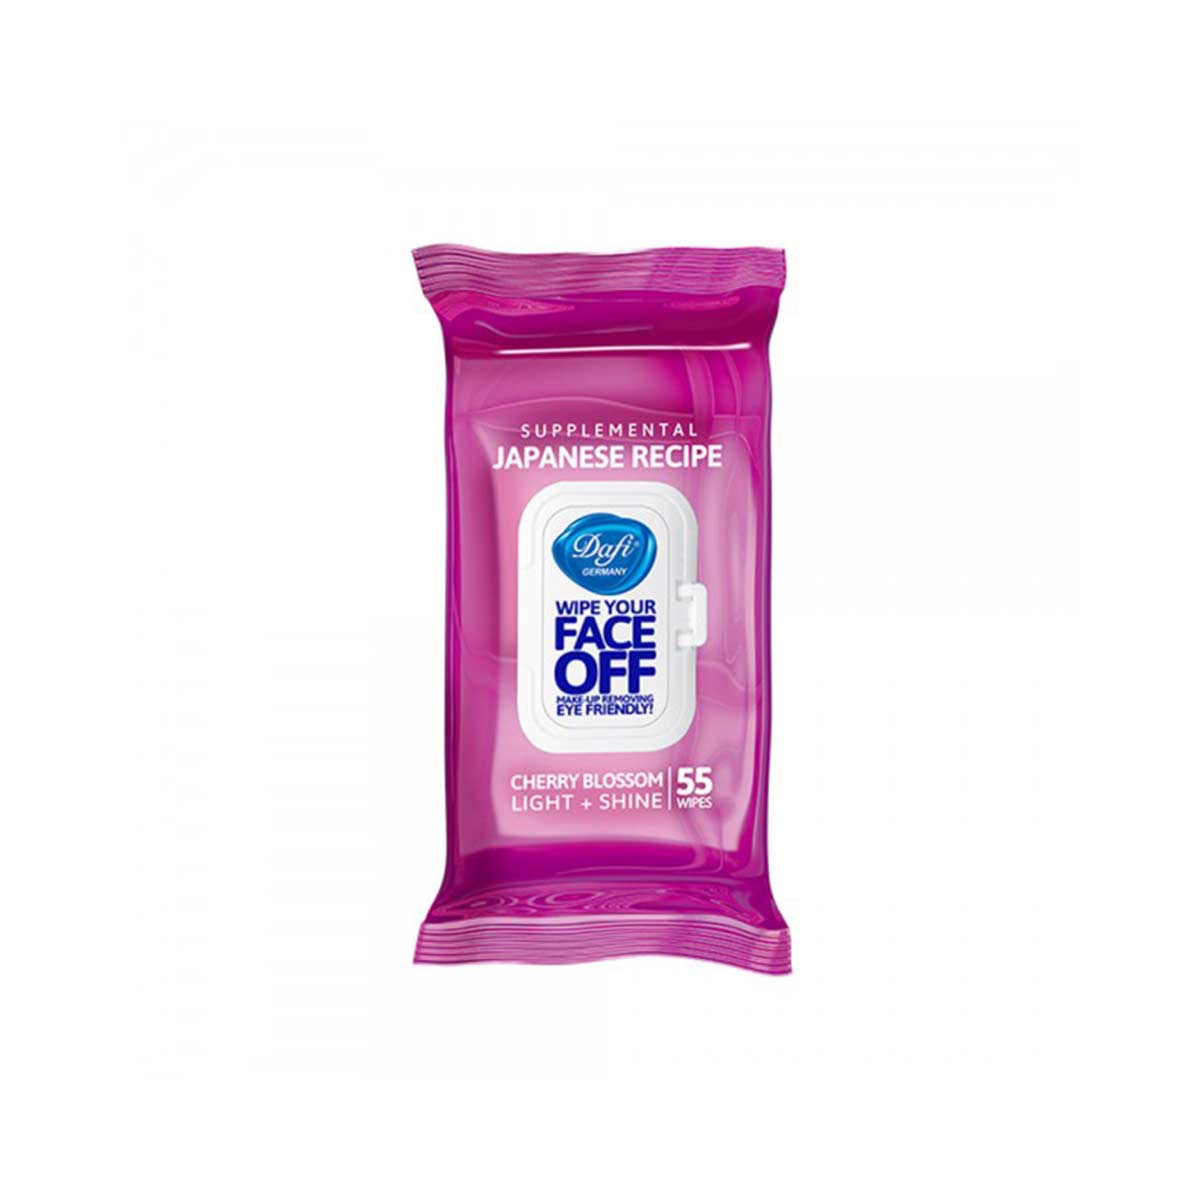 دستمال مرطوب پاک کننده آرایش دافی حاوی عصاره شکوفه گیلا مدل ژاپنی face off بسته ۵۵ عددی